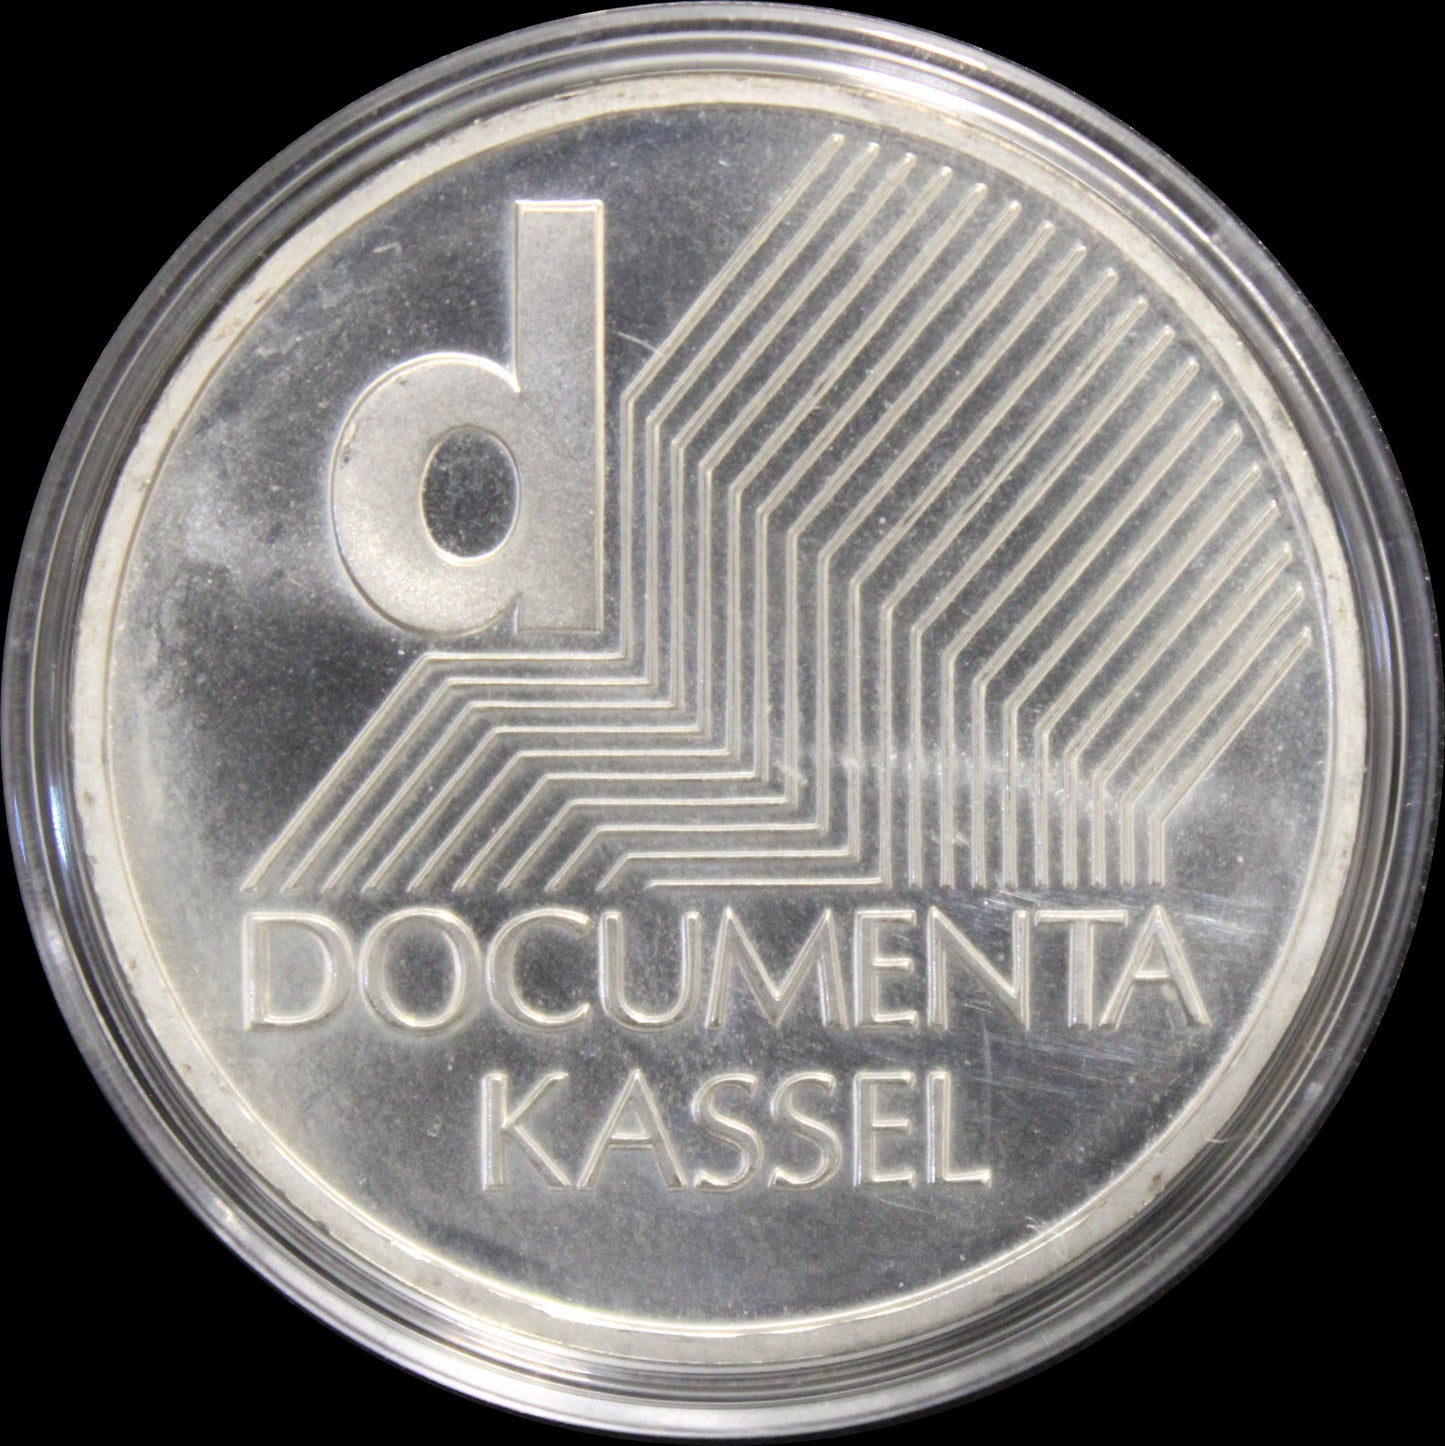 KUNSTAUSSTELLUNG DOCUMENTA KASSEL, Serie 10 € Silber Gedenkmünzen Deutschland, Stempelglanz, 2002